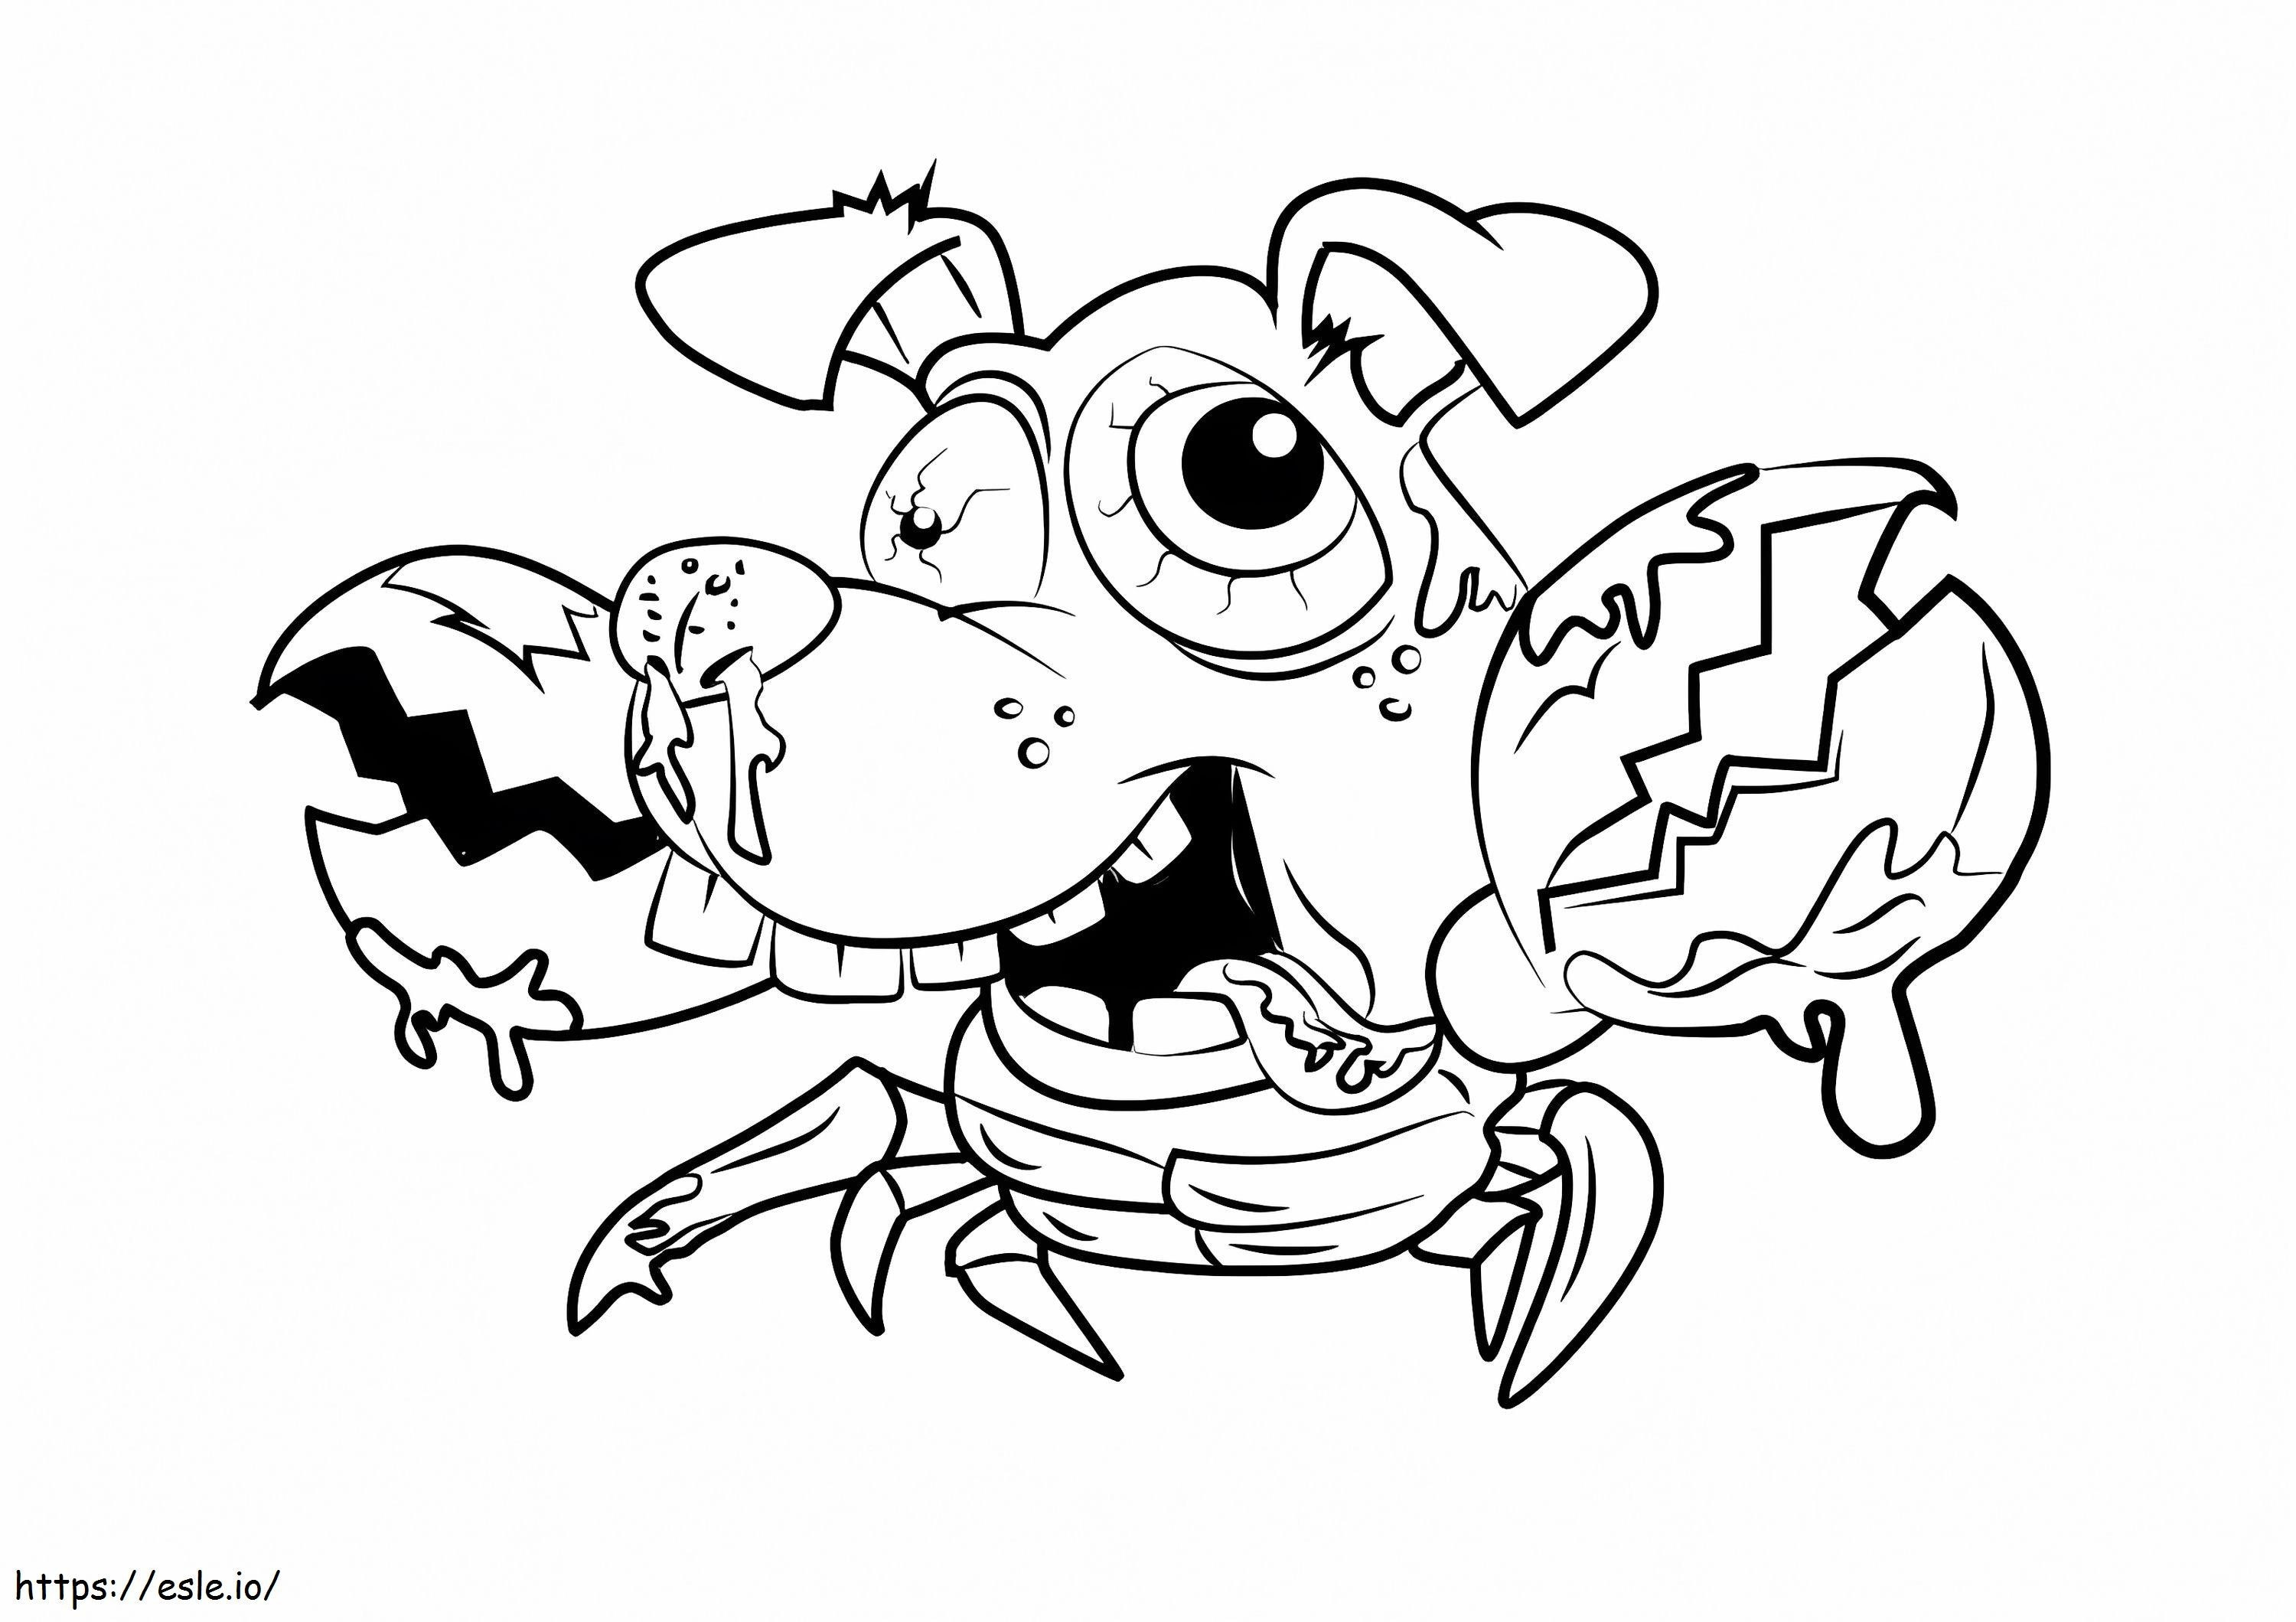 Crabrador Ugglys Pet Shop coloring page